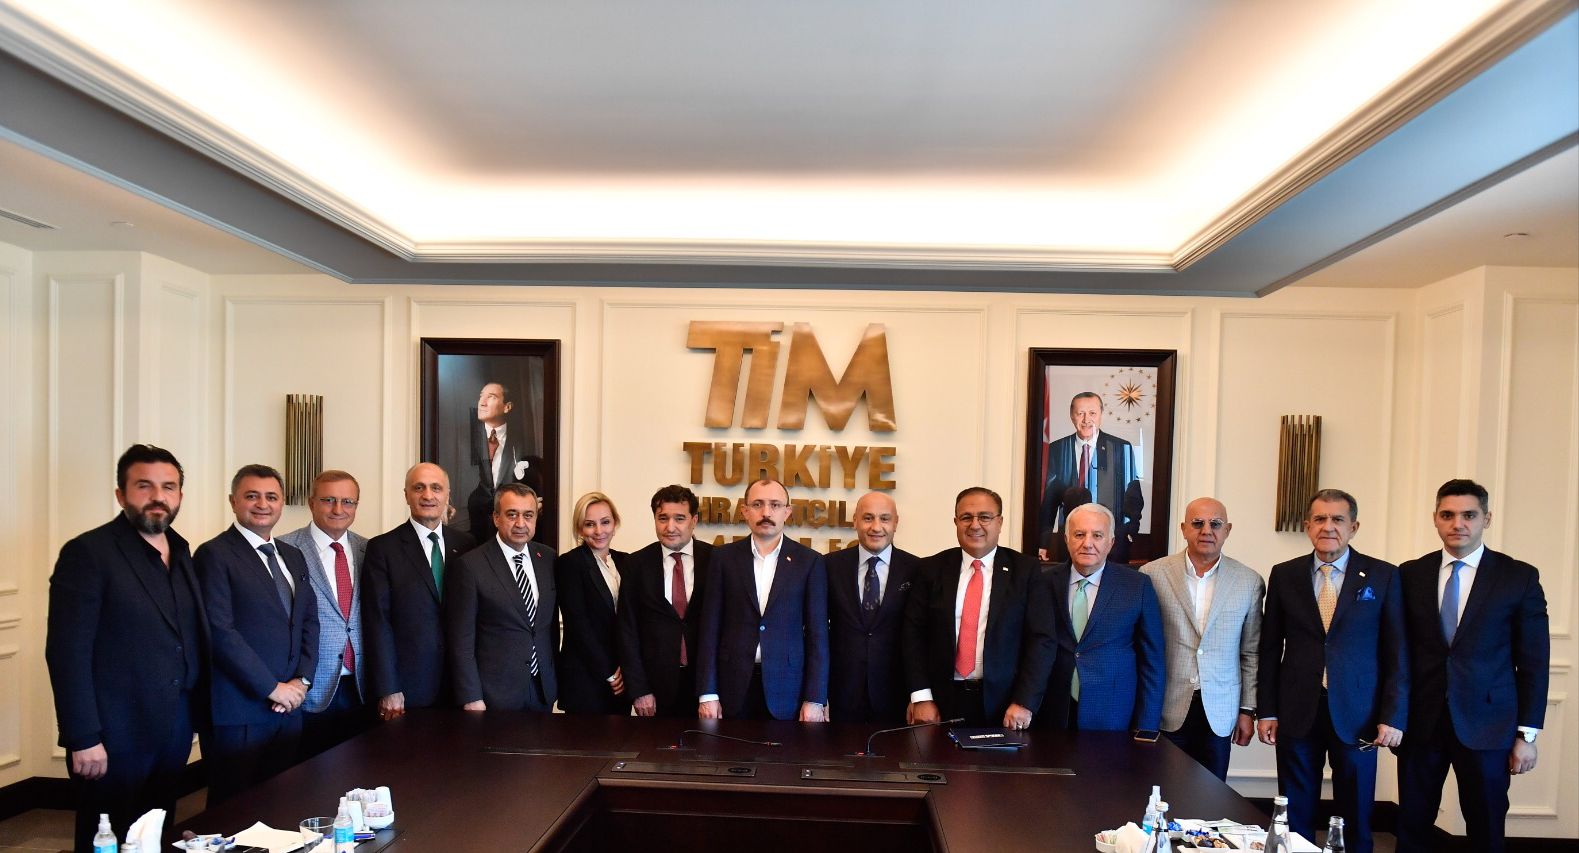 Ticaret Bakanı Dr. Mehmet Muş, TİM Yönetim Kurulu İle Bir Araya Geldi